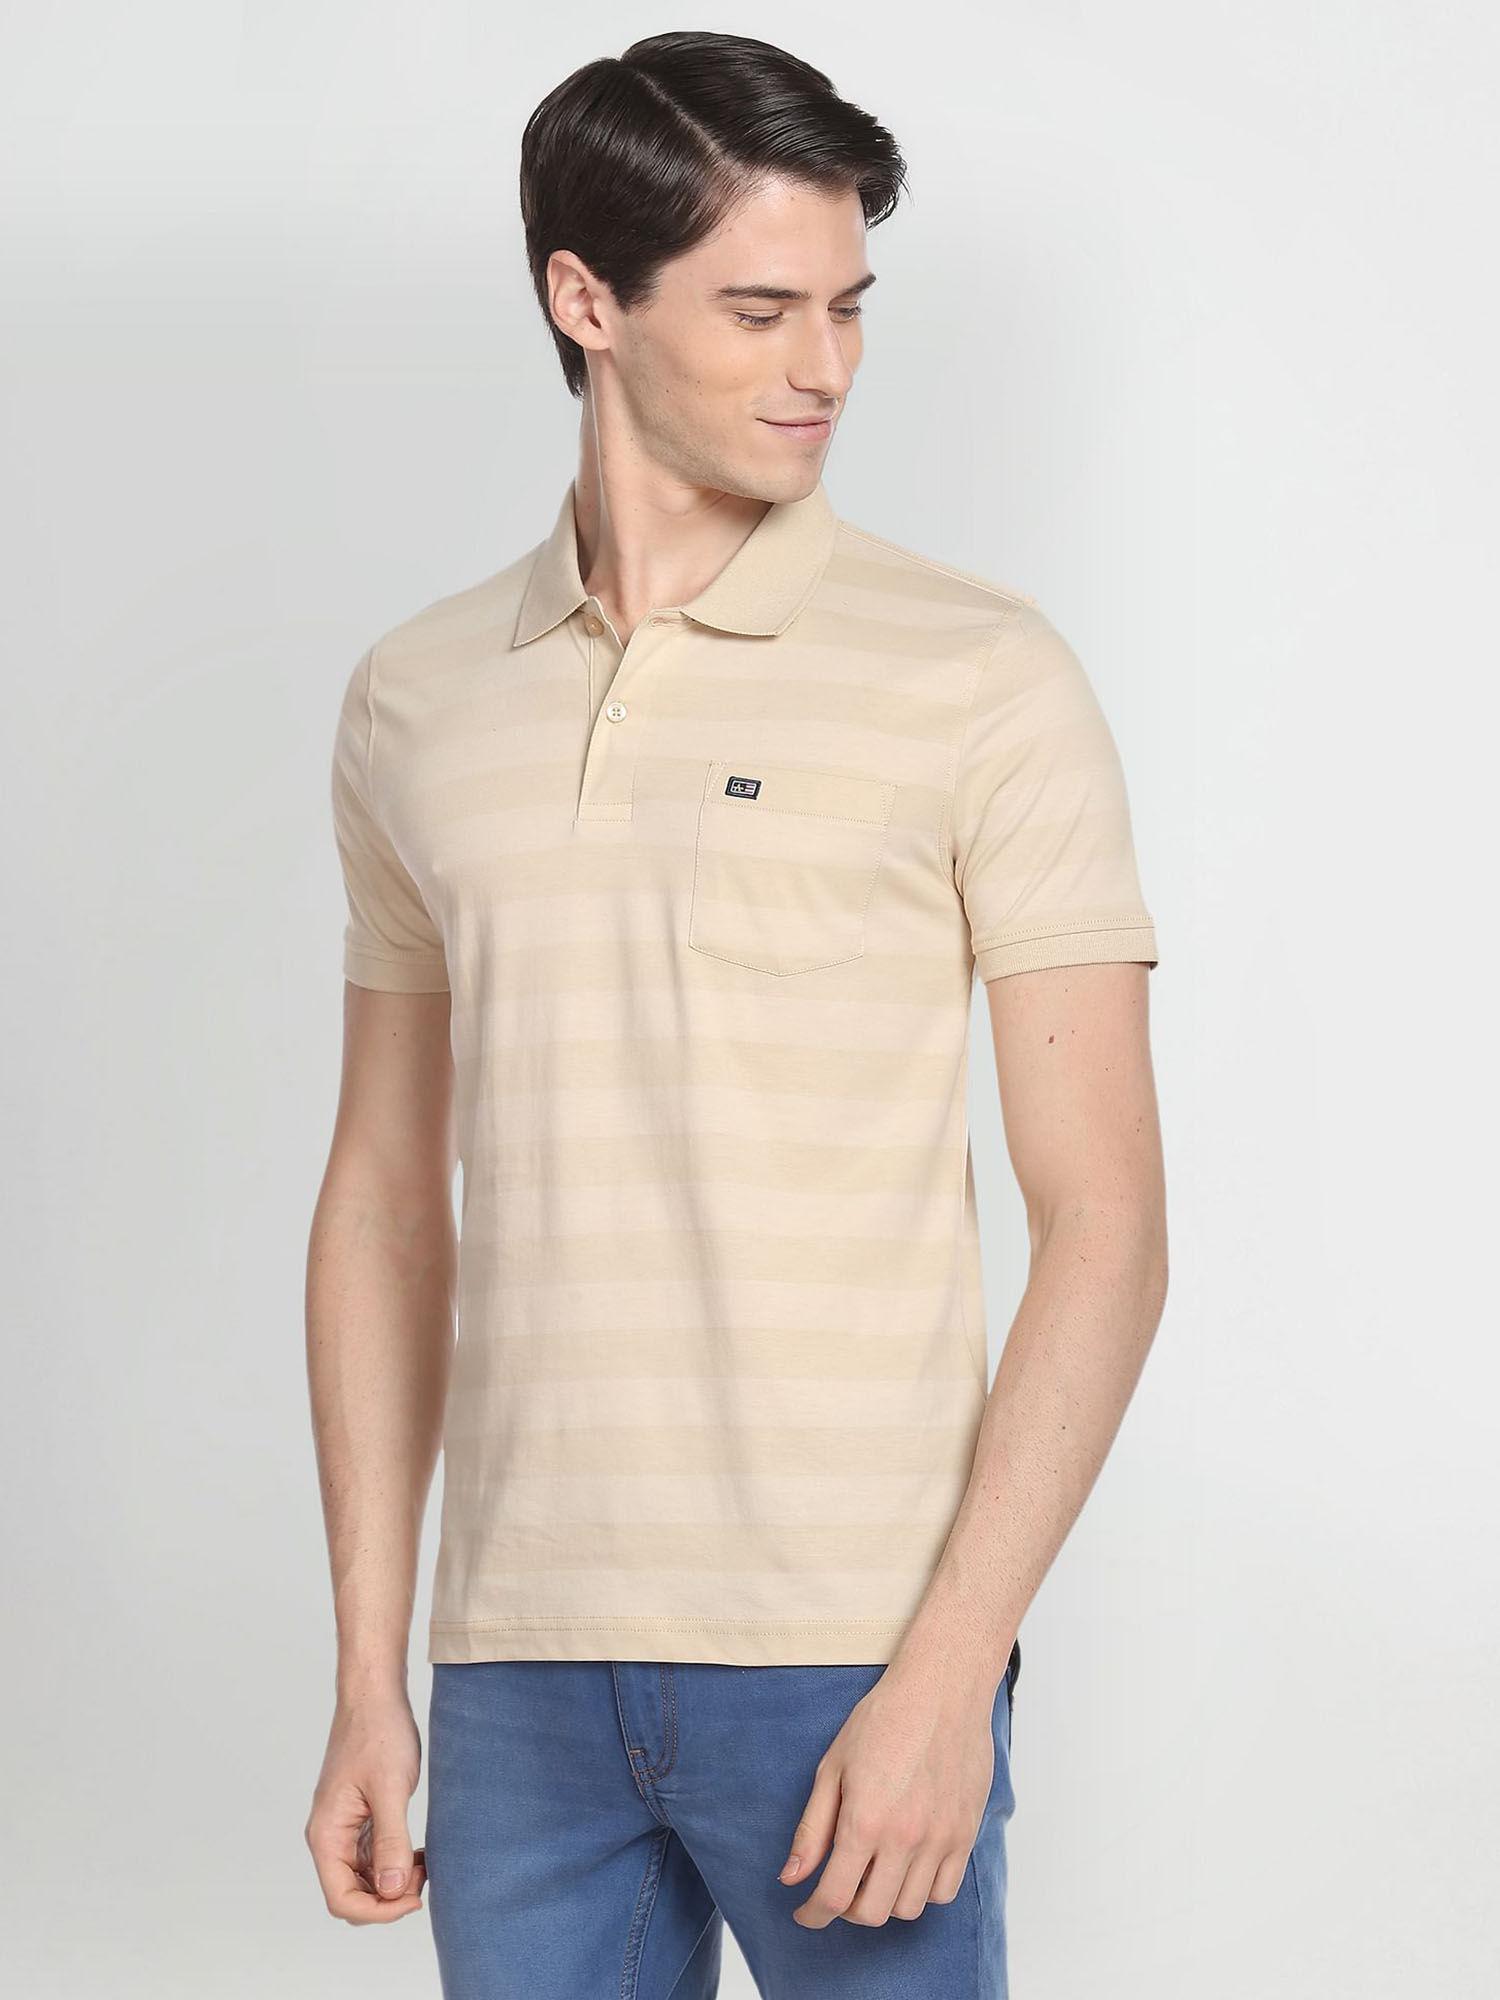 patch pocket horizontal stripe polo shirt